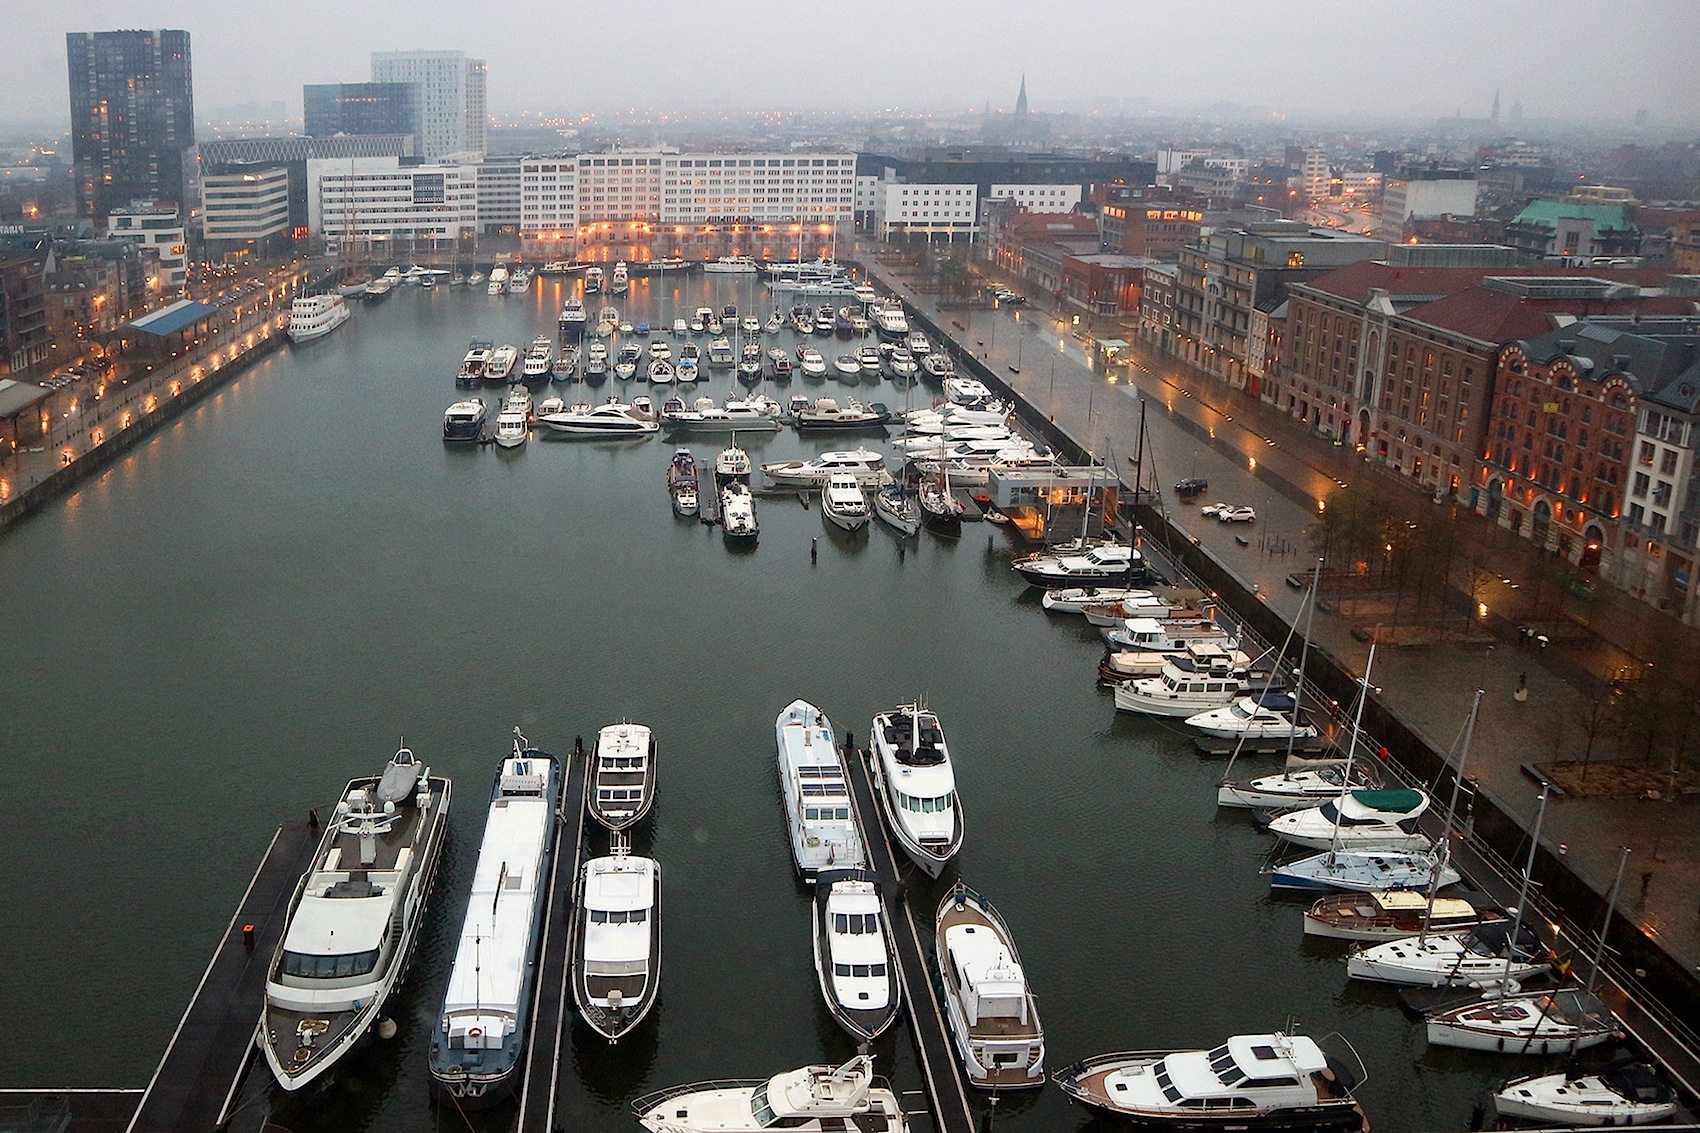 Durch die gewellten Glasscheiben fällt der Blick hinunter auf die ältesten Docks der Stadt, den Willemdok und den Bonapartedok.